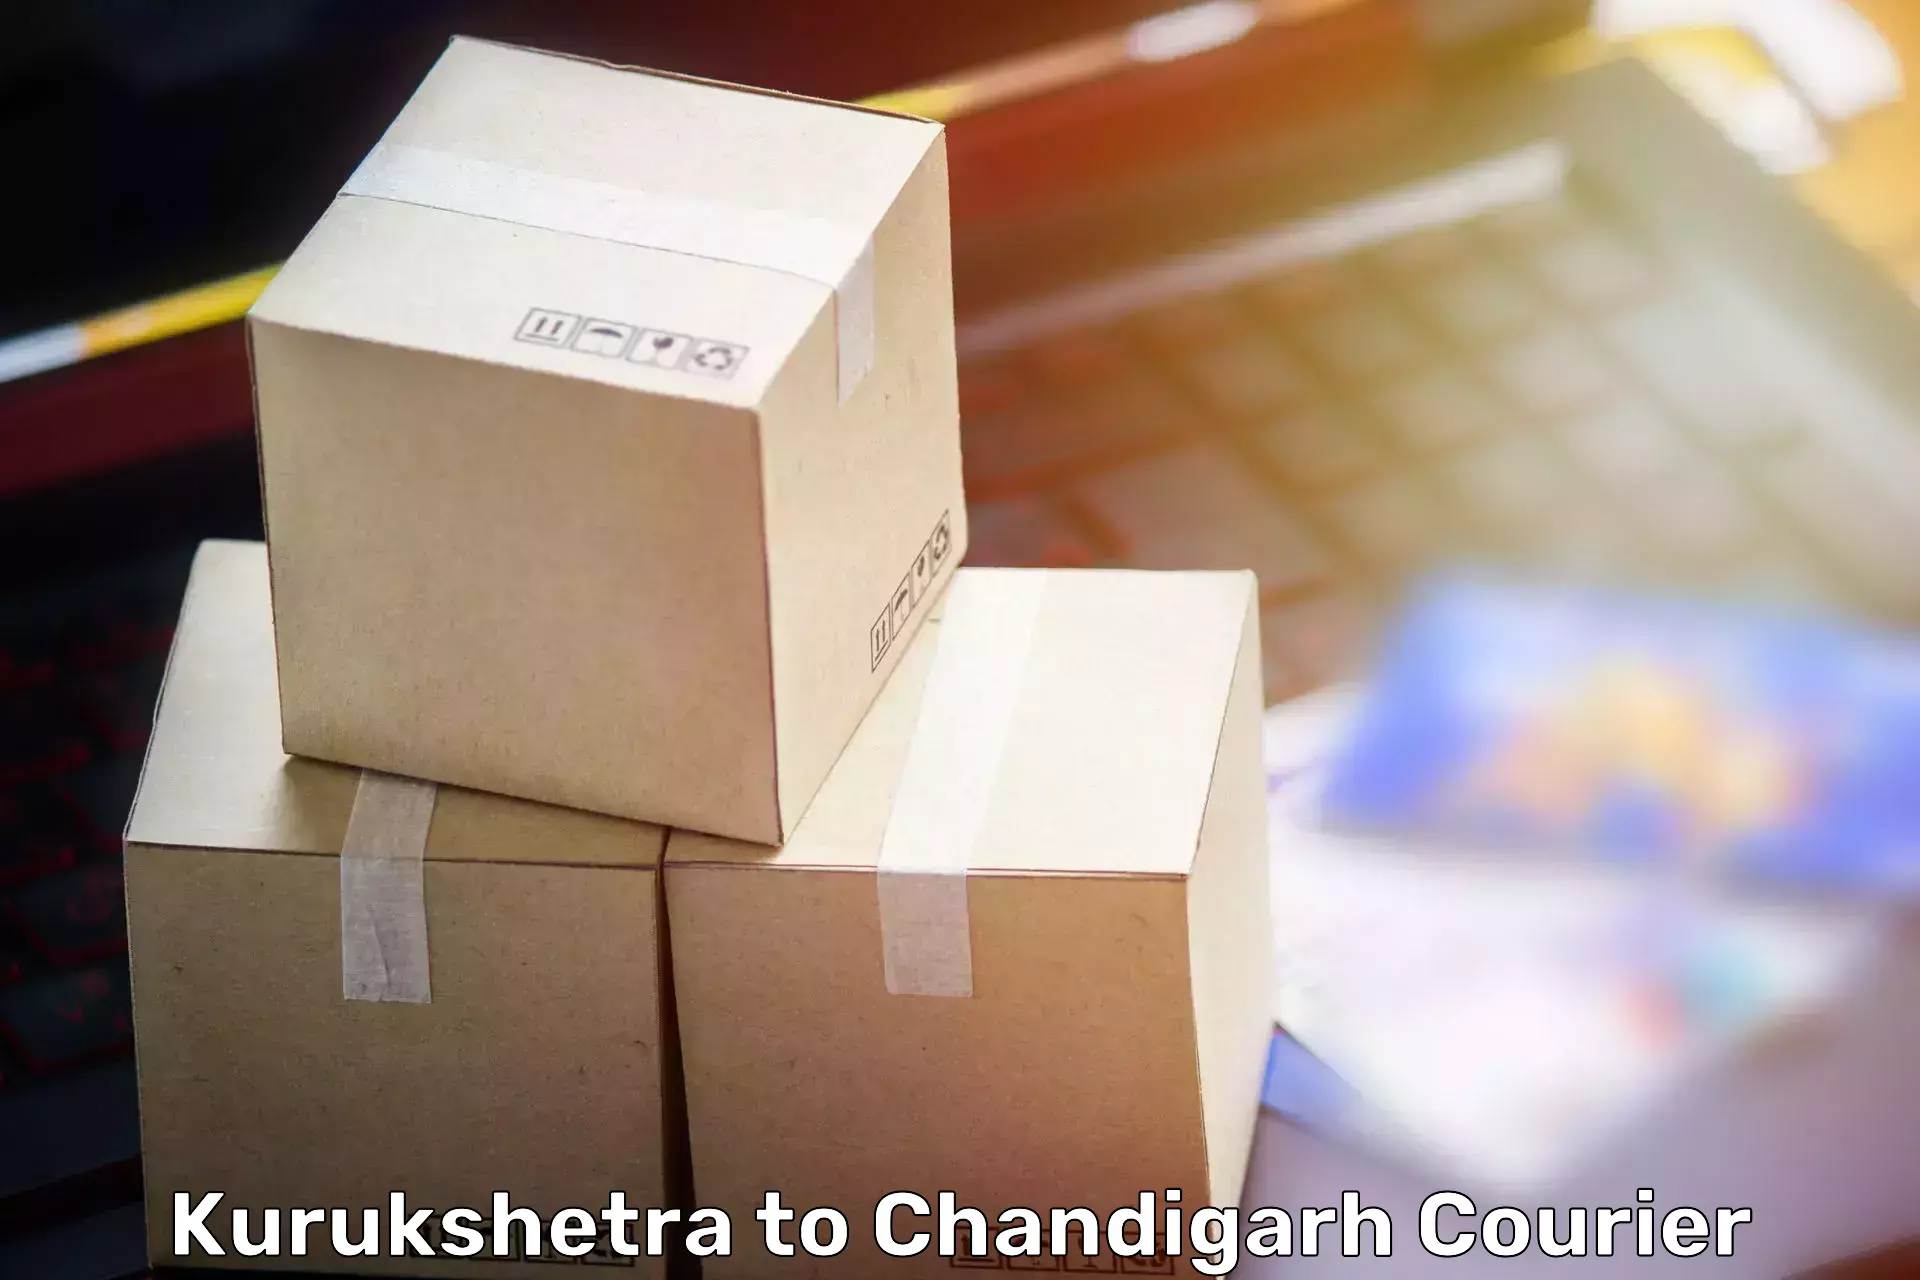 Home goods moving company Kurukshetra to Panjab University Chandigarh